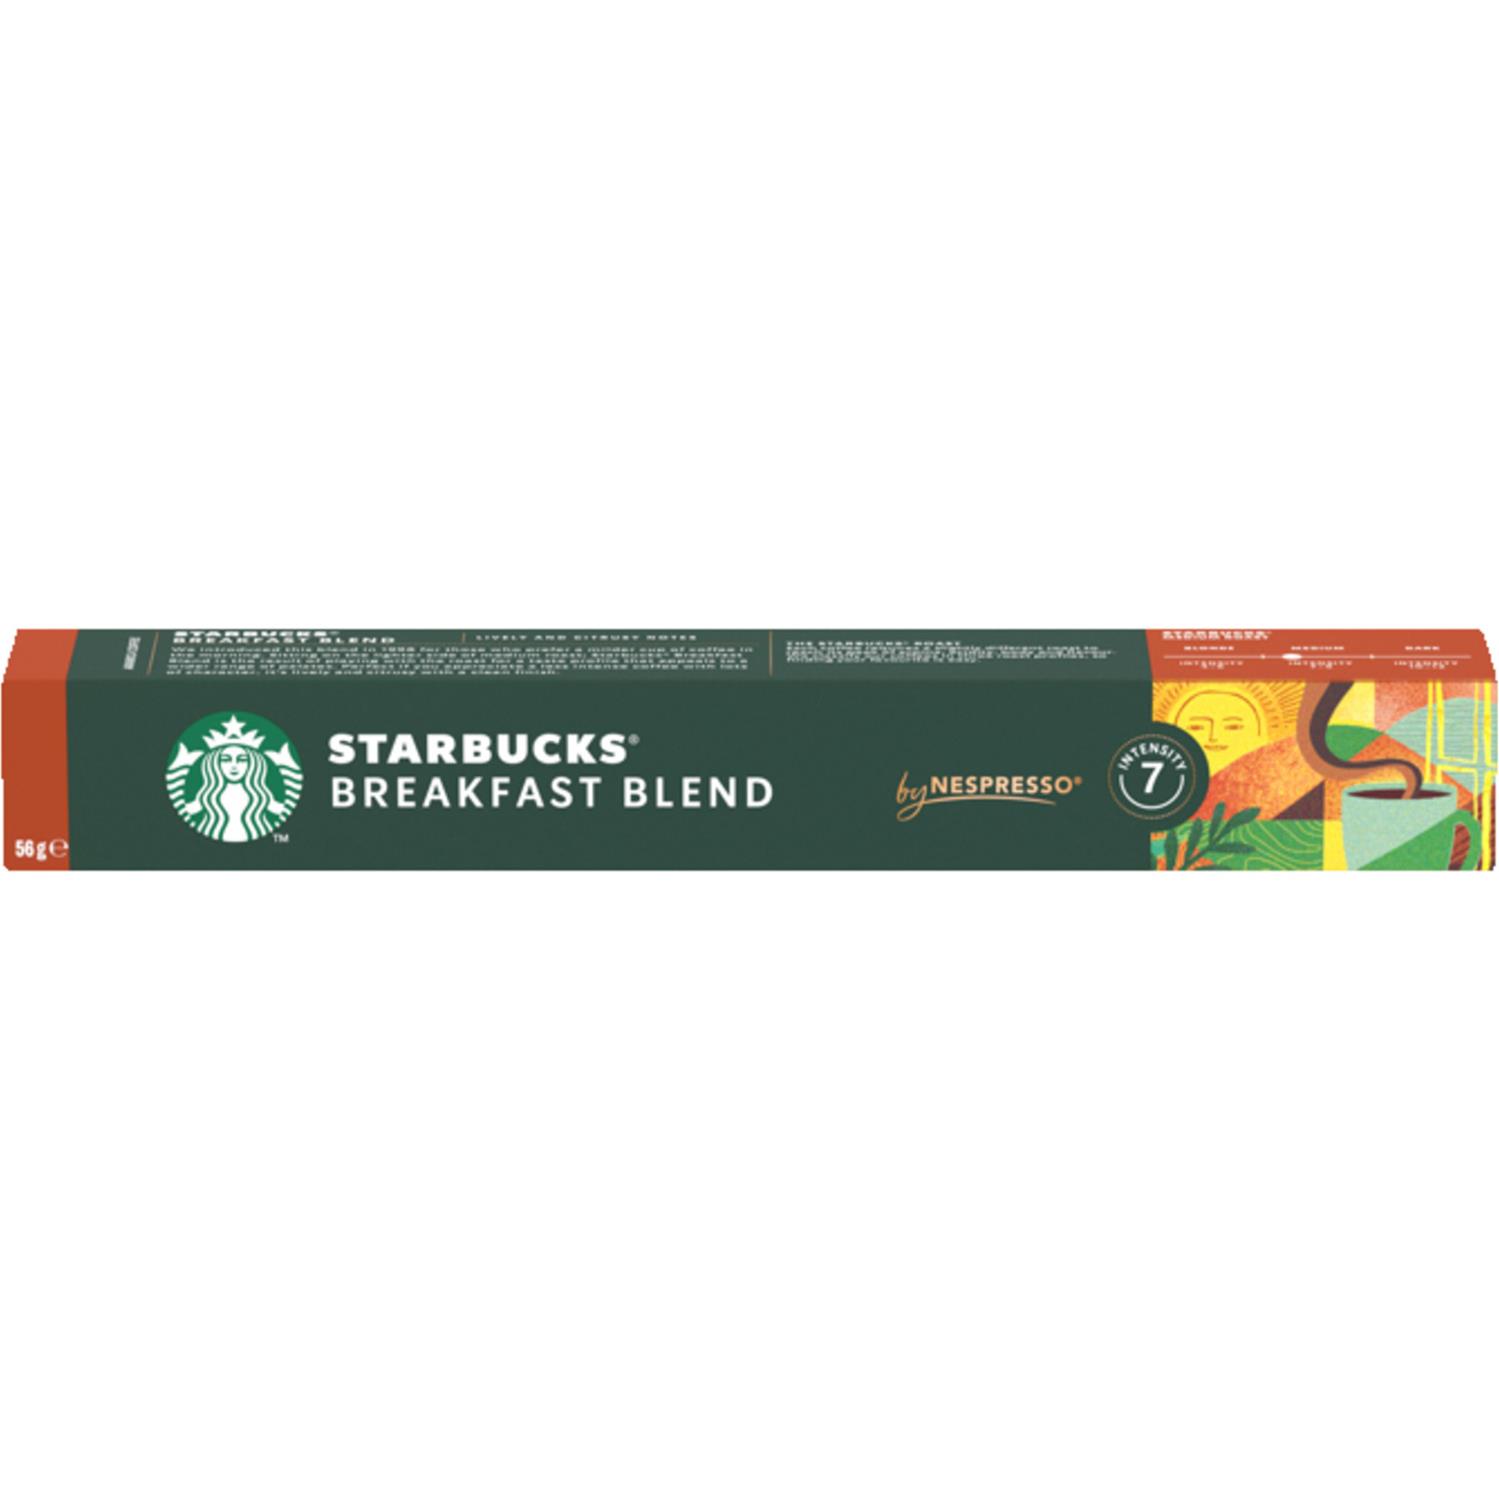 motor pebermynte mave Starbucks Kapsel Breakfast Blend 56g - Grænsehandel til billige priser